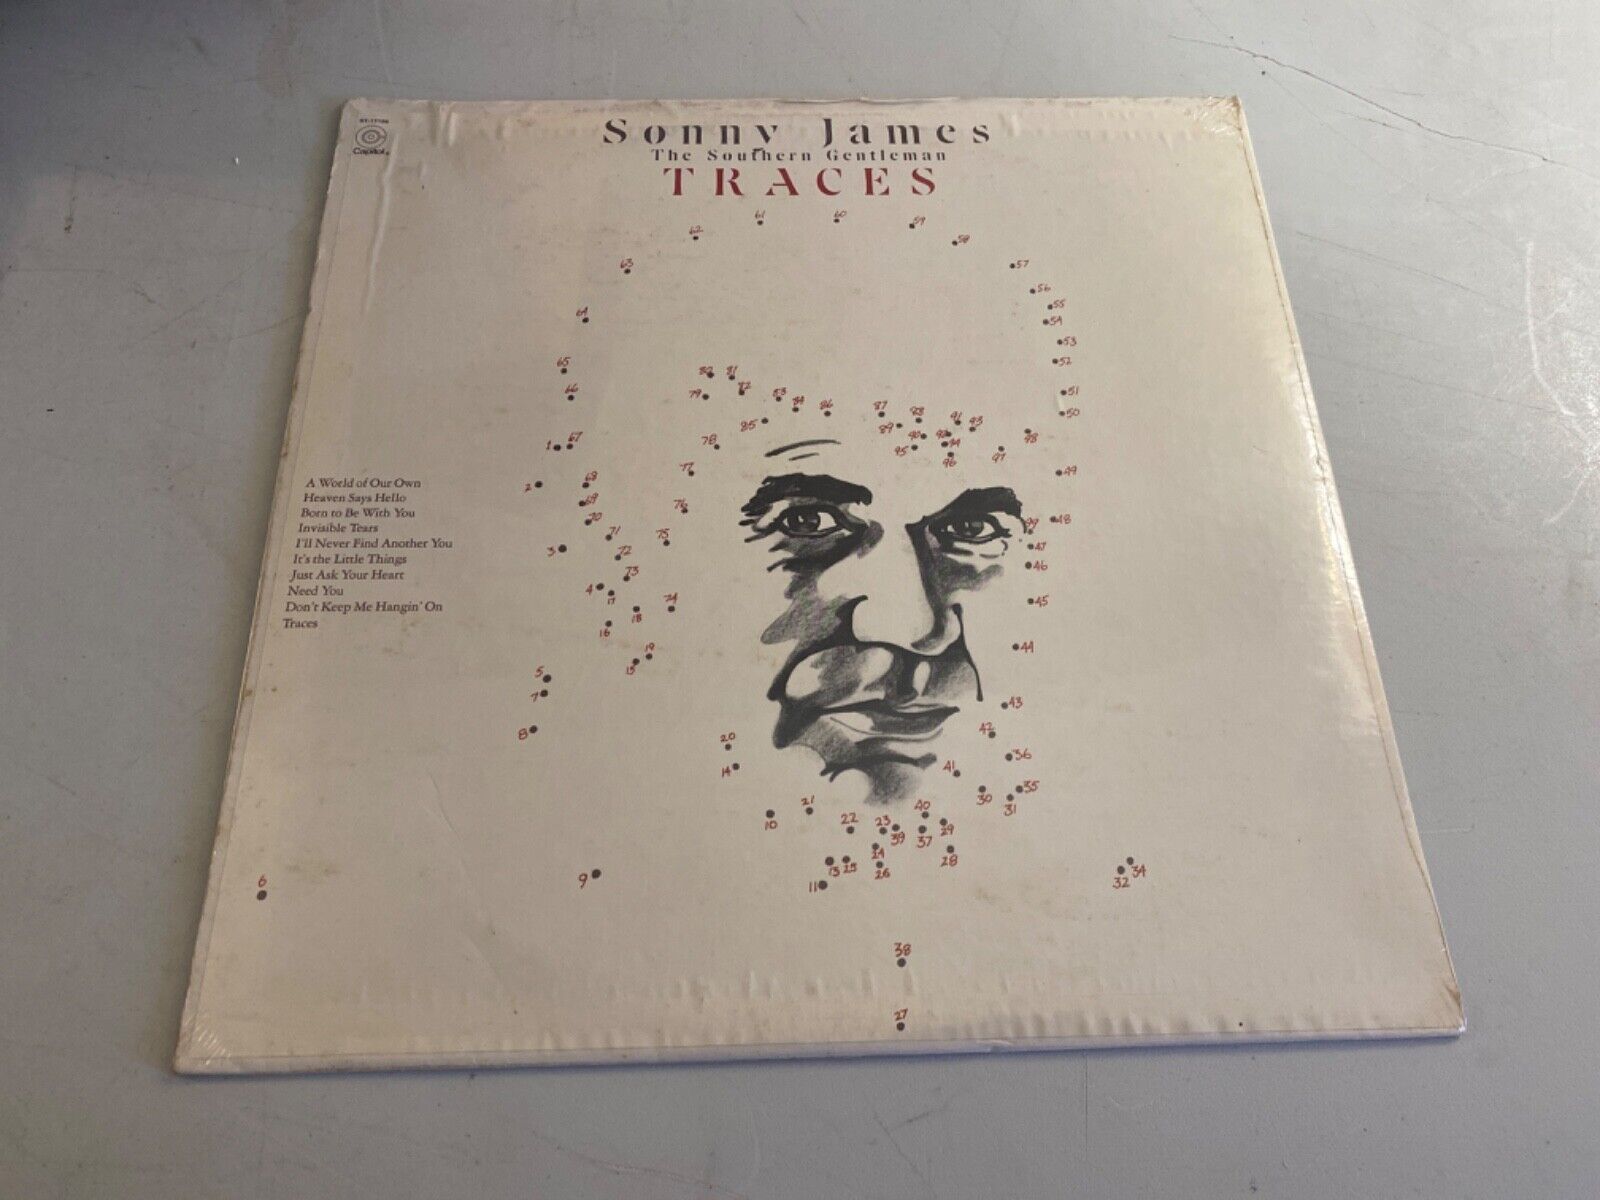 SONNY JAMES TRACES VINYL LP RECORD ALBUM 1972 CAPITOL ST-11008 SEALED MINT